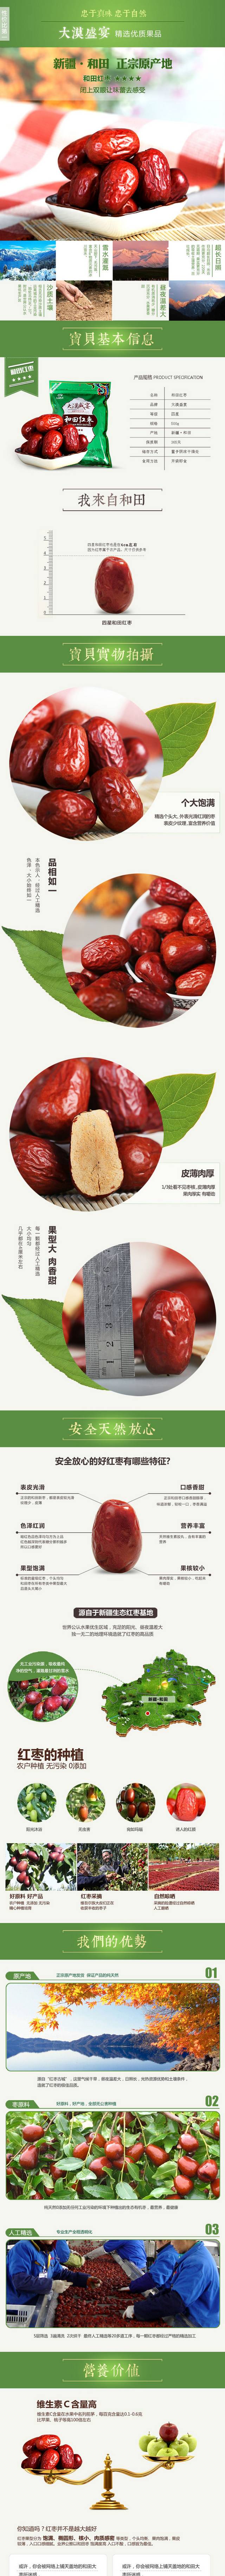 红枣宝贝产品描述细节详情页设计